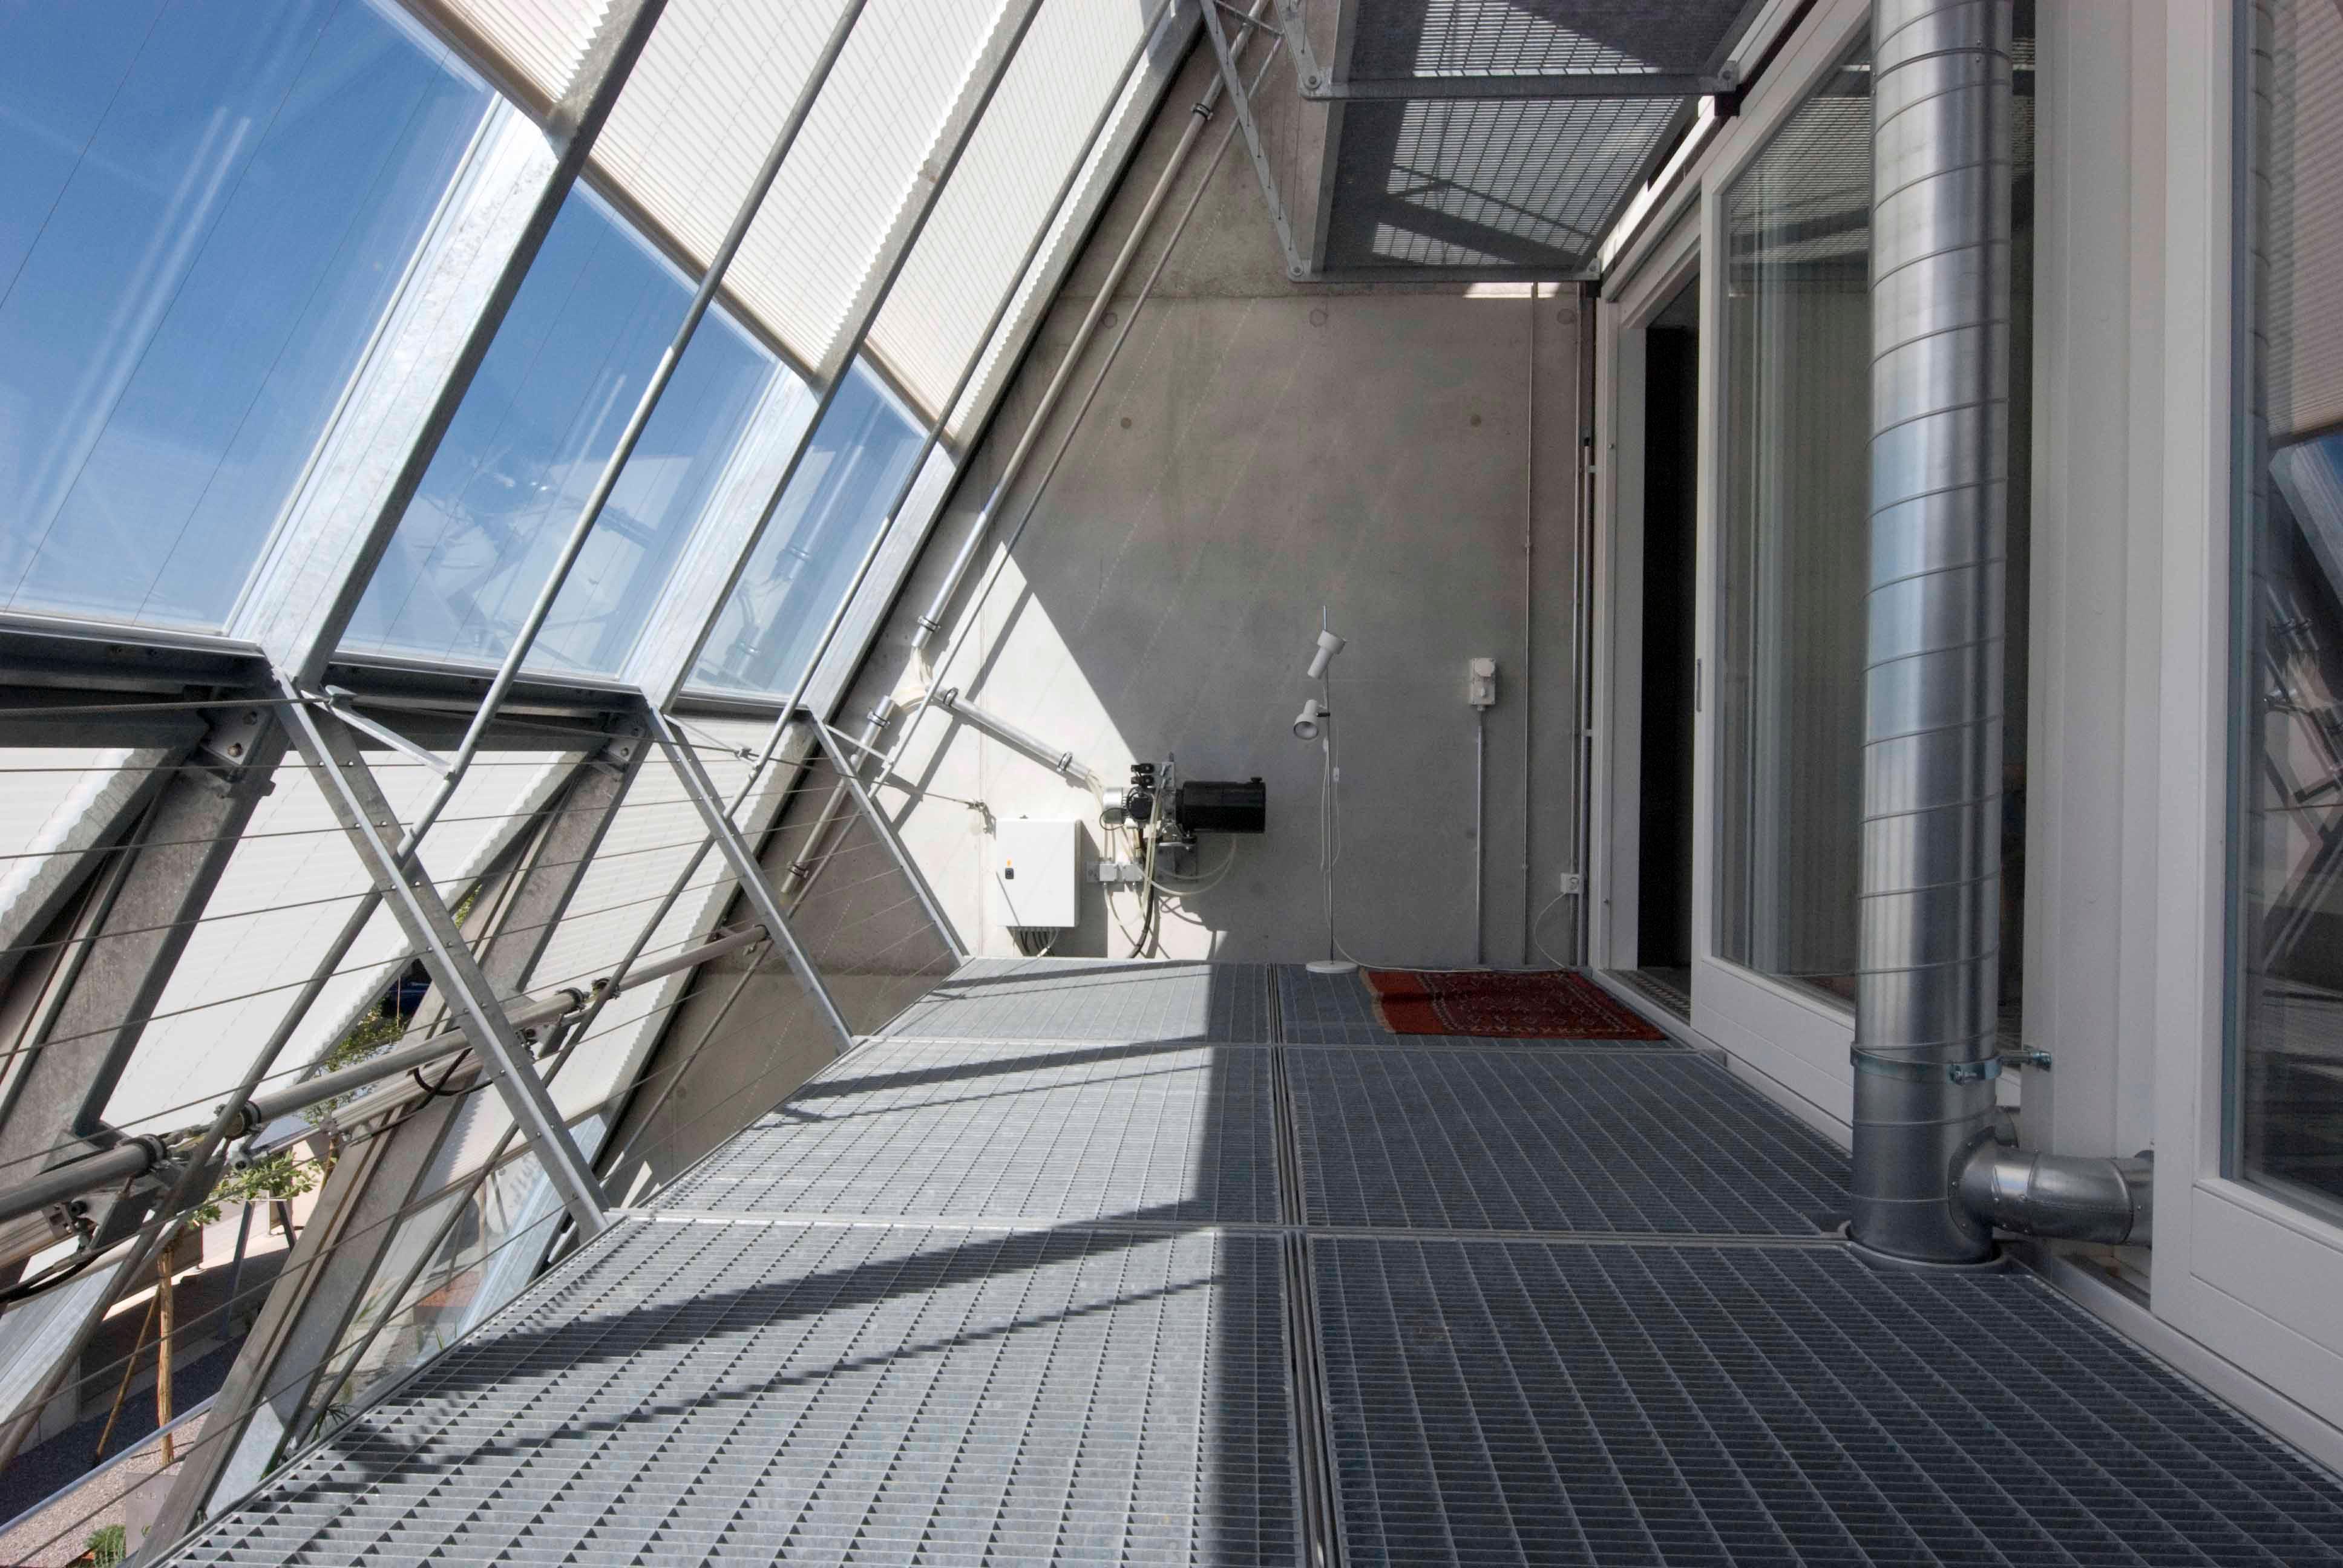  Architektur-Reportage Riedholz Sonne Solarpannel: Wintergarten mit schrägem Dach als Pufferzone